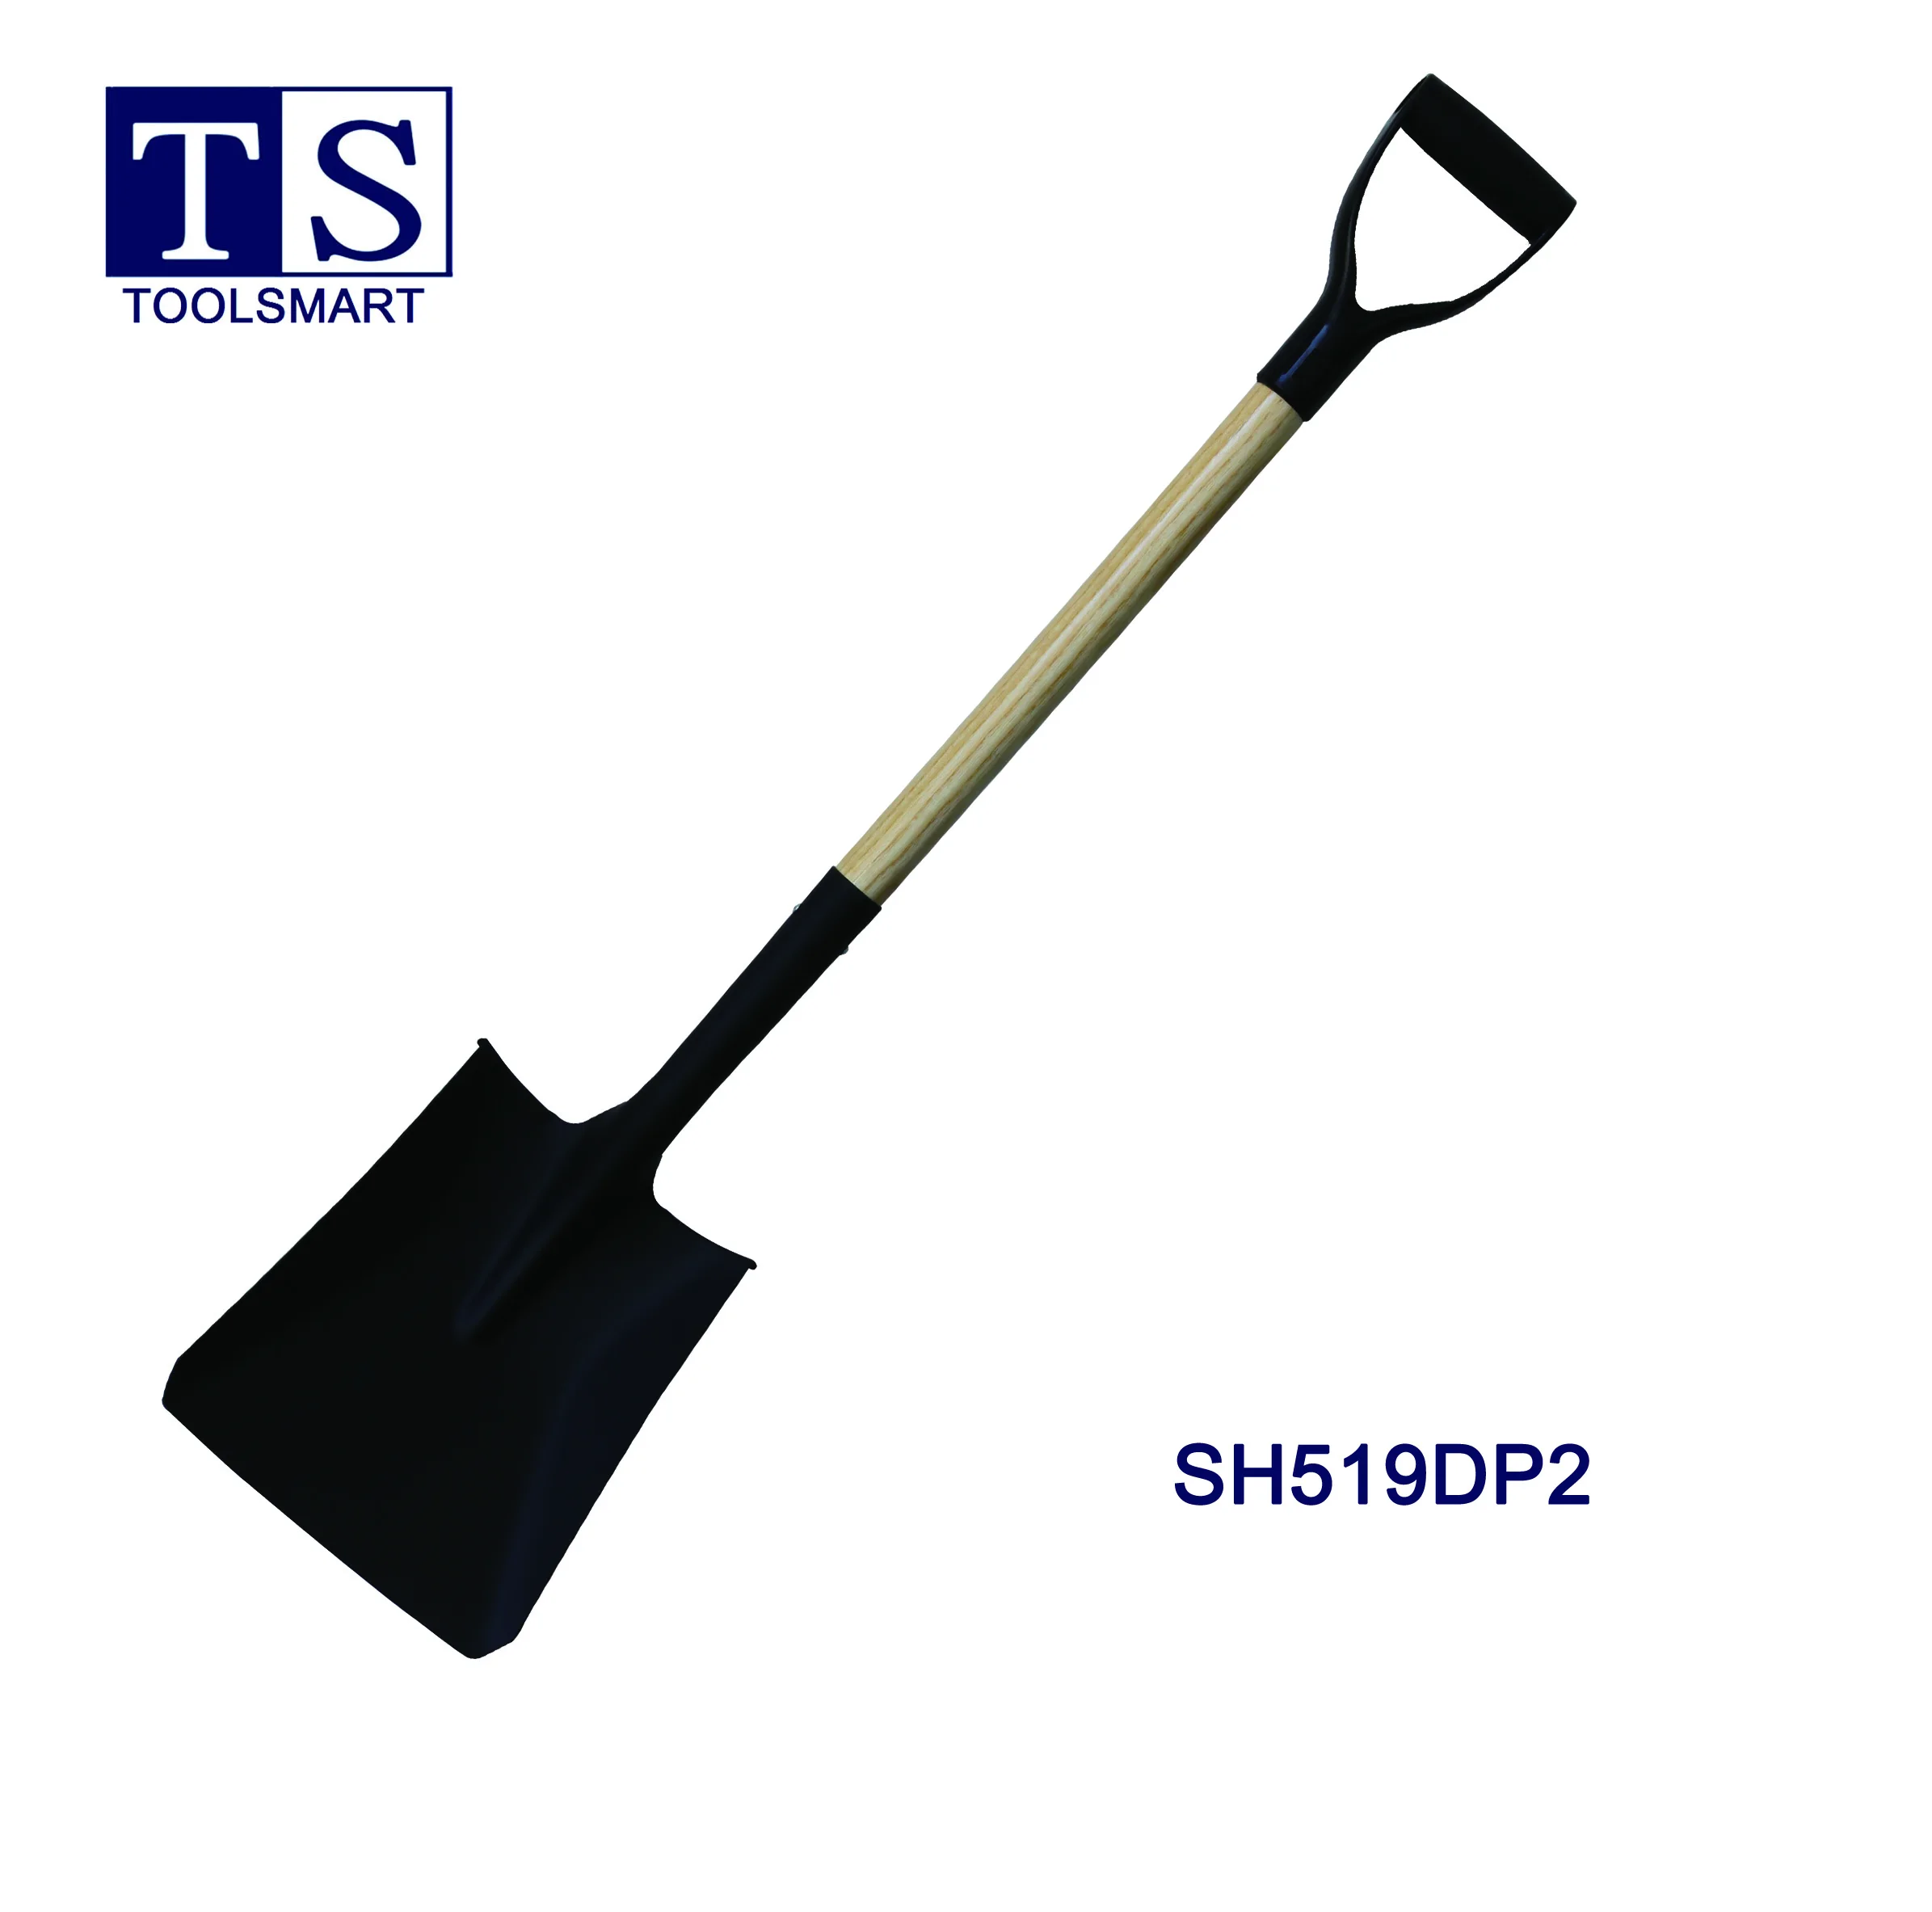 best spade shovel